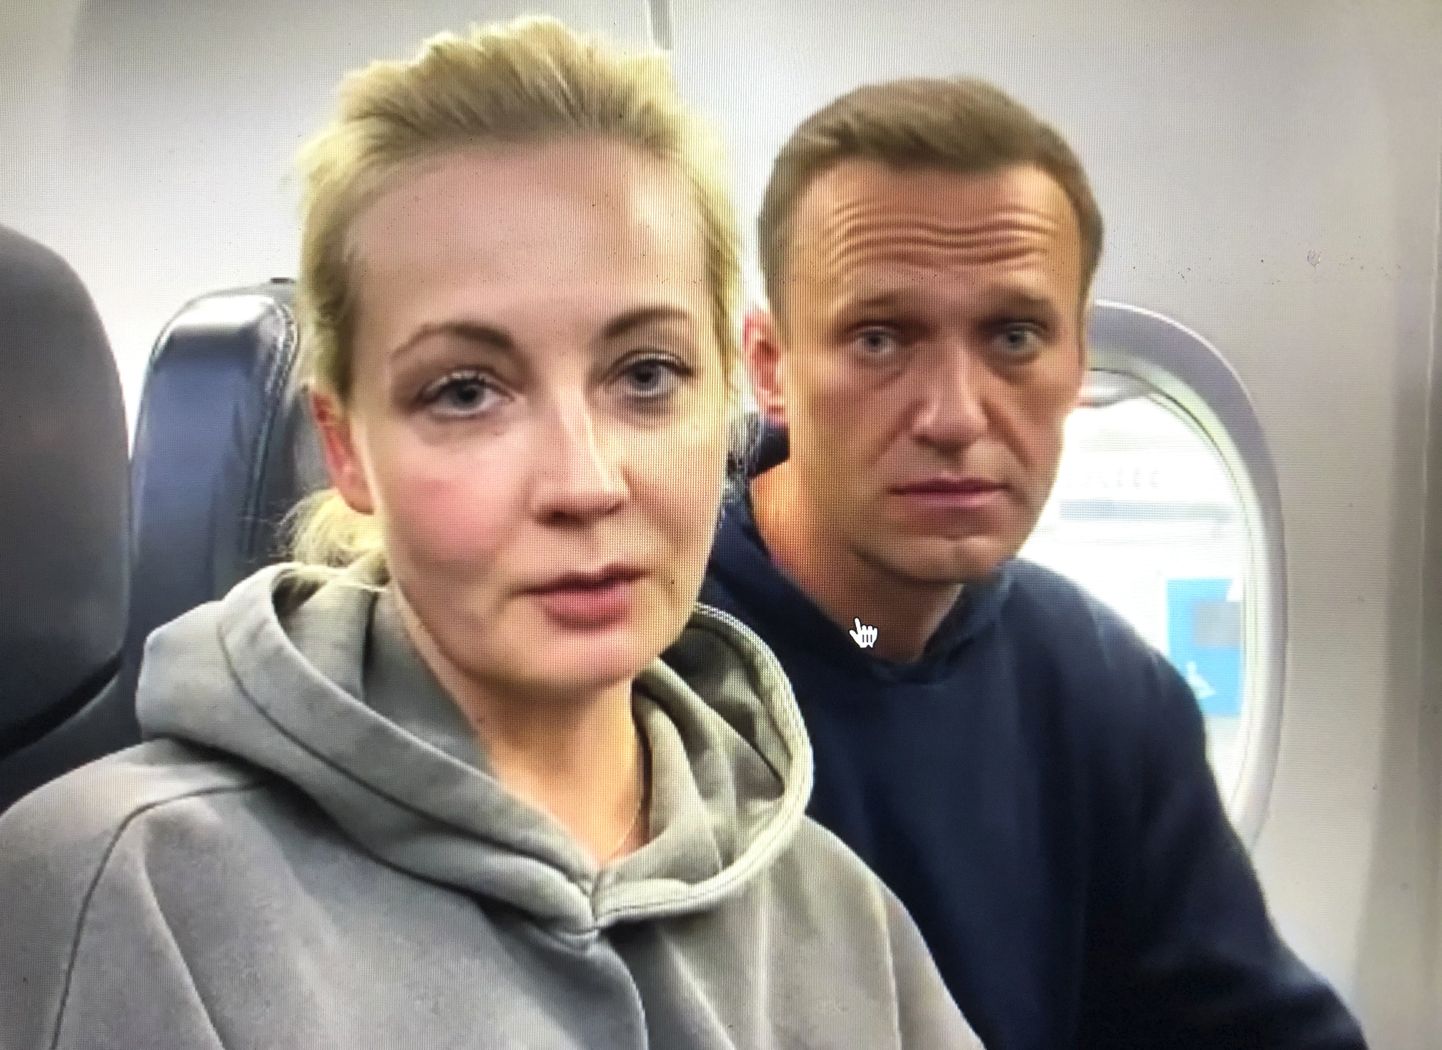 Vene opositsioonijuht Aleksei  Navalnõi ja ta naine Julia Navalnaja 17. jaanuaril 2021 lennukis, mis lendas Saksamaalt Berliinist Venemaale Moskvasse, kus Vene võimud Navalnõi kinni pidasid ja ta kohtu alla anti. Navalnõi oli Saksamaal ravil Novitšoki rühma närvimürgiga mürgitamise tõttu